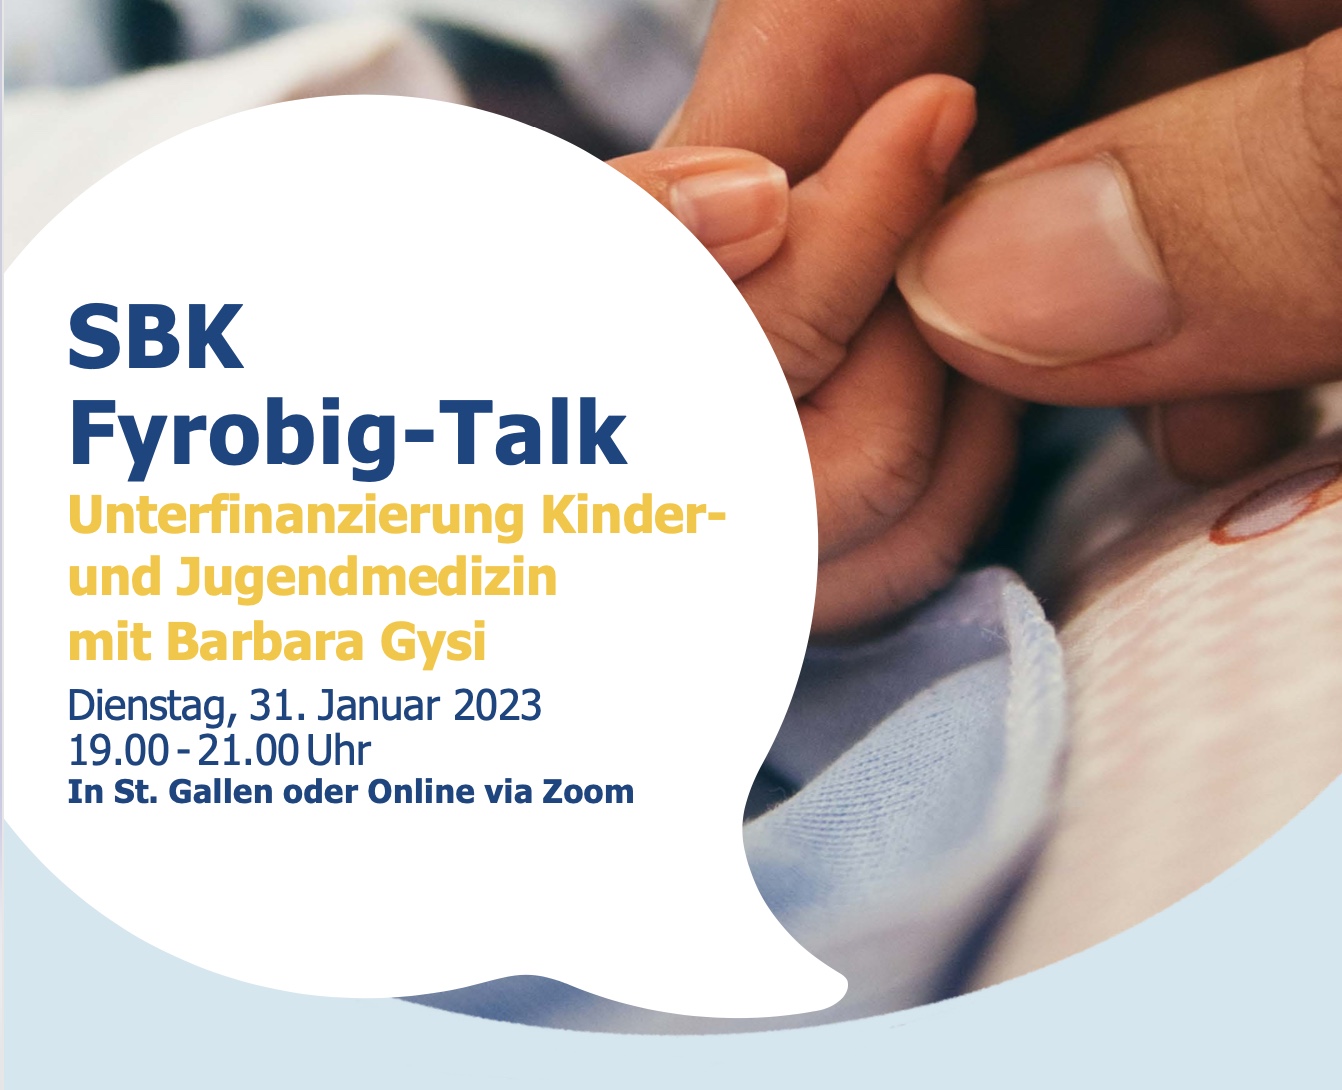 SBK Fyrobig-Talk: Unterfinanzierung Kinder- und Jugendmedizin